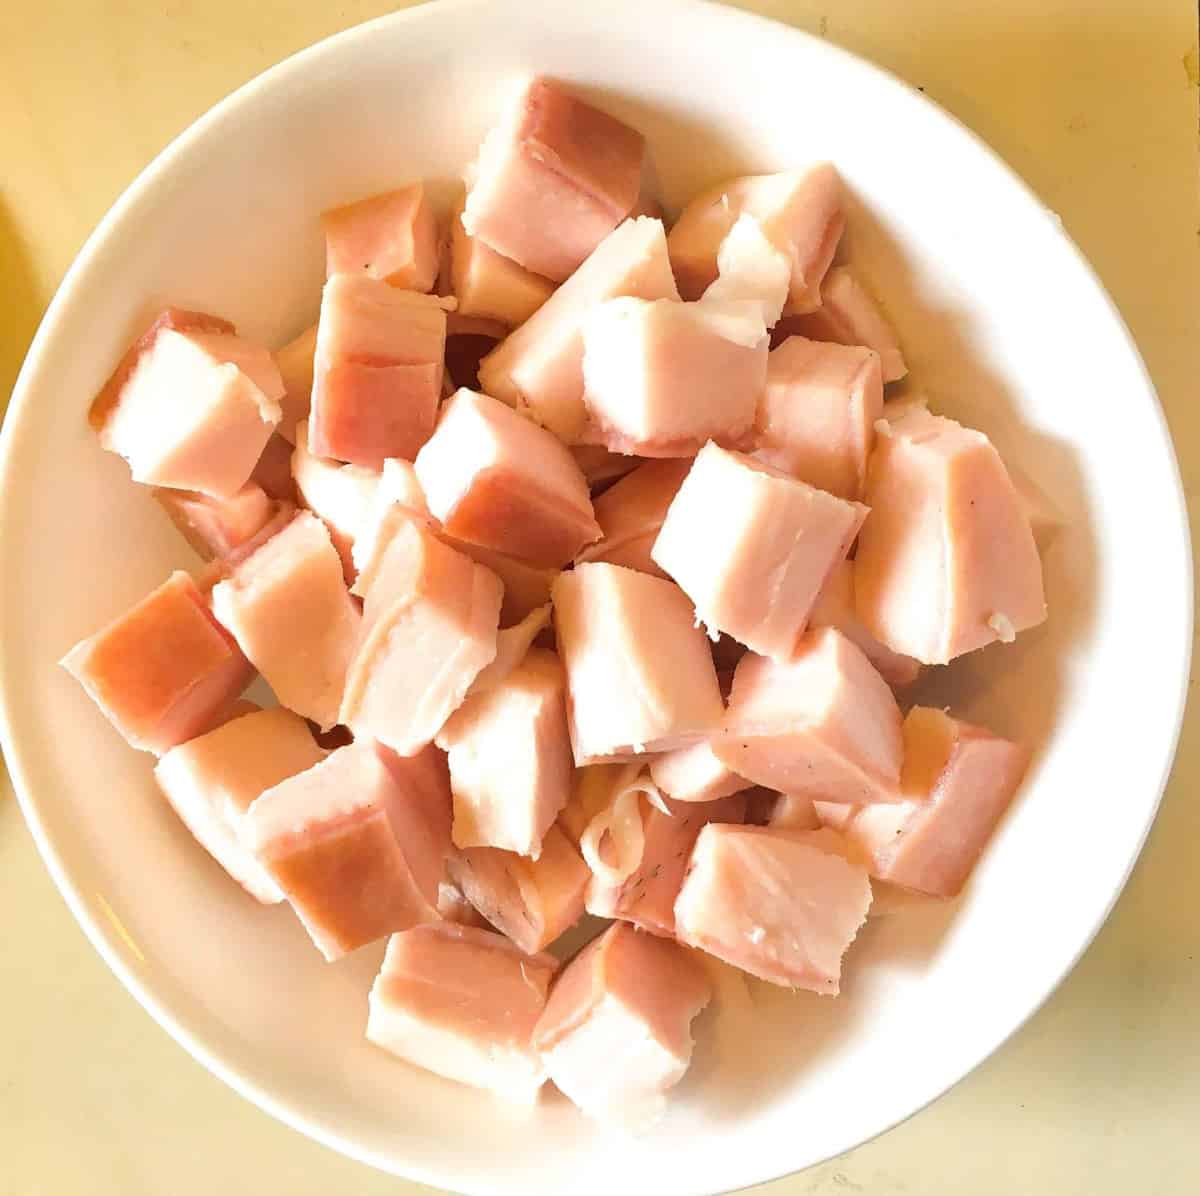 pork fat cubes